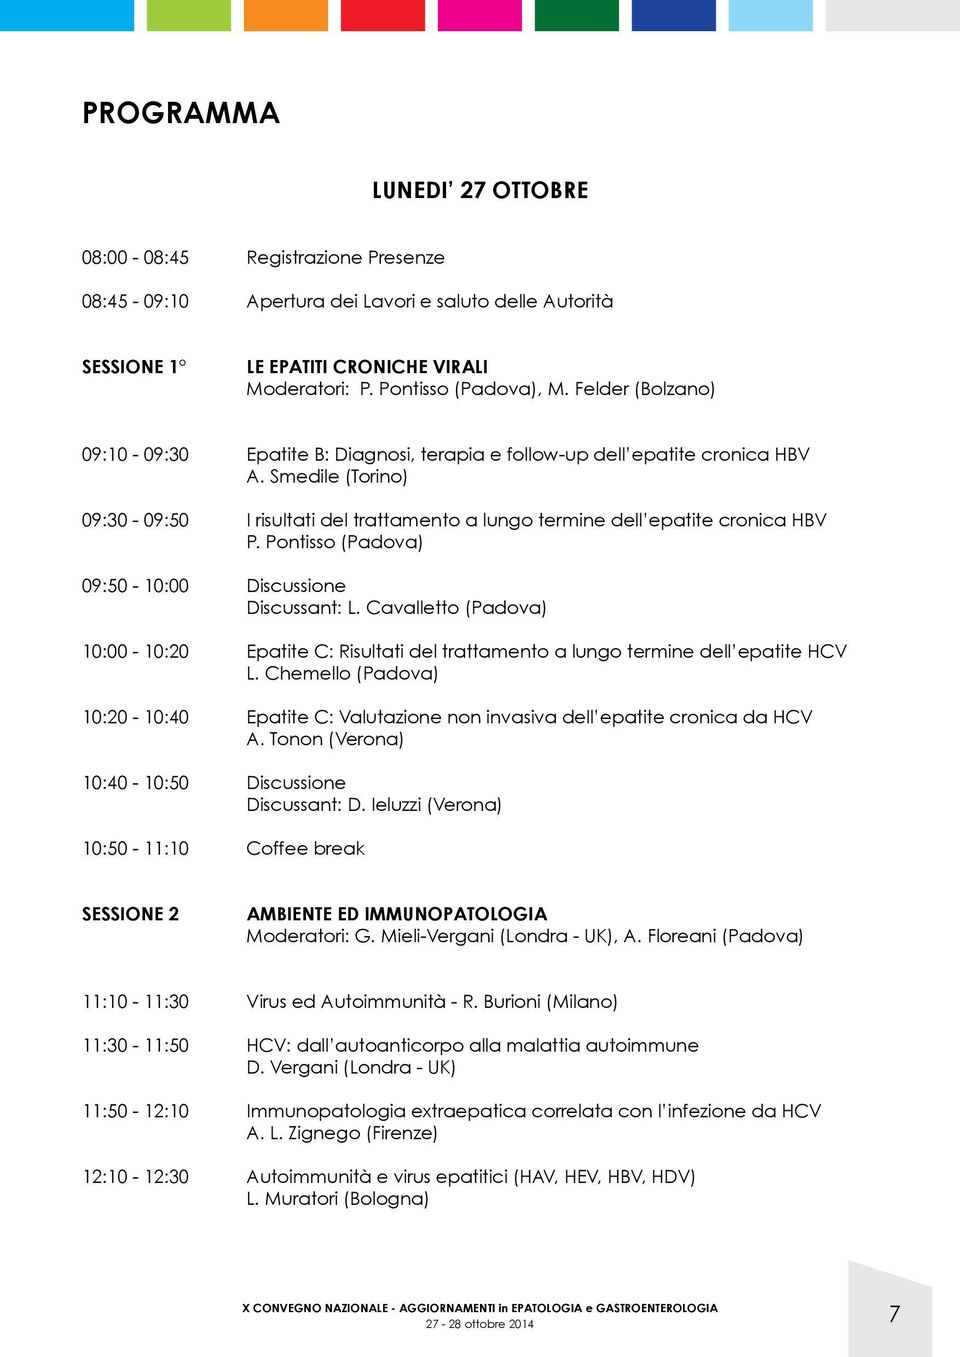 Pontisso (Padova) 09:50-10:00 Discussione Discussant: L. Cavalletto (Padova) 10:00-10:20 Epatite C: Risultati del trattamento a lungo termine dell epatite HCV L.